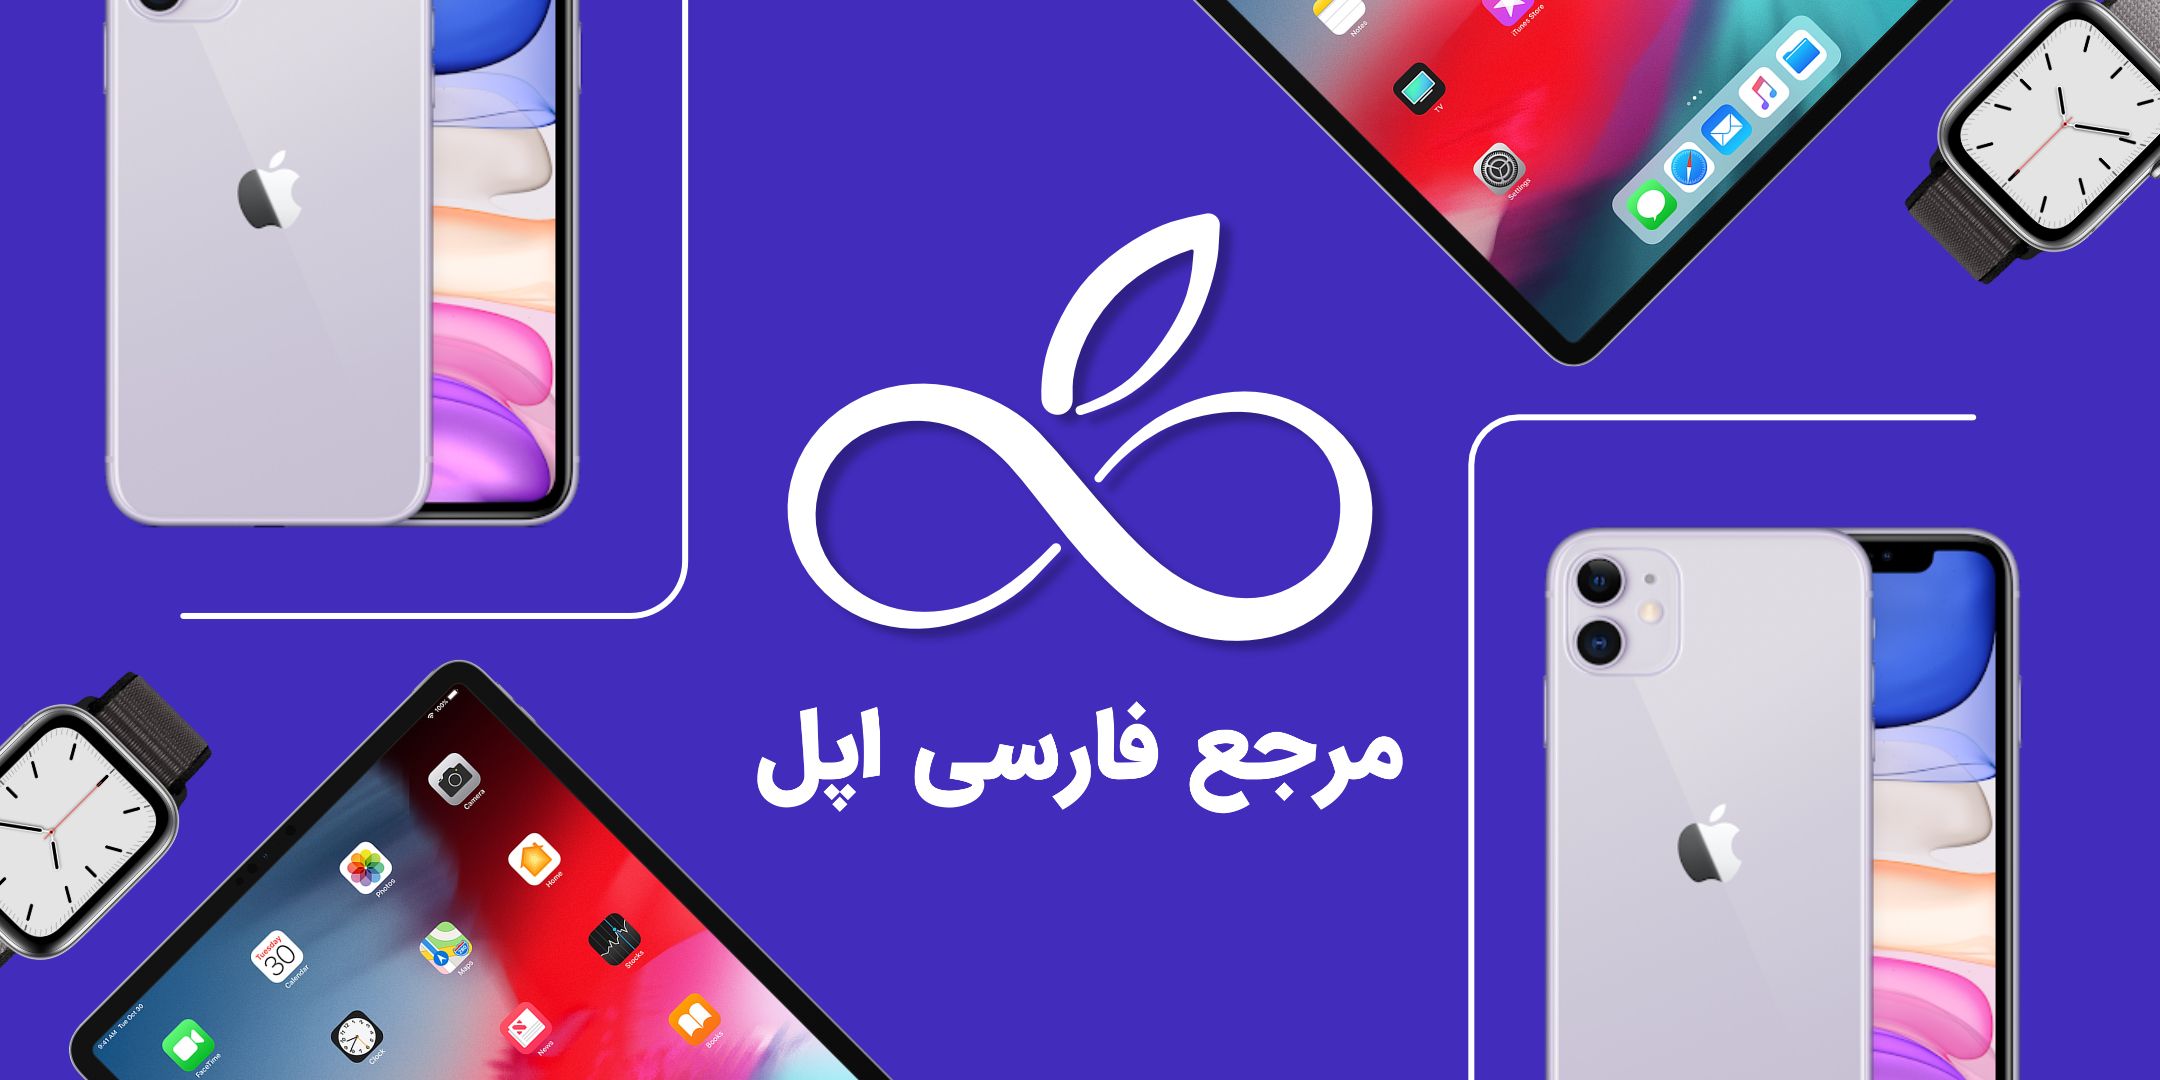 معرفی وبسایت فراسیب؛ مرجع فارسی اپل در ایران | رسانه چیکاو